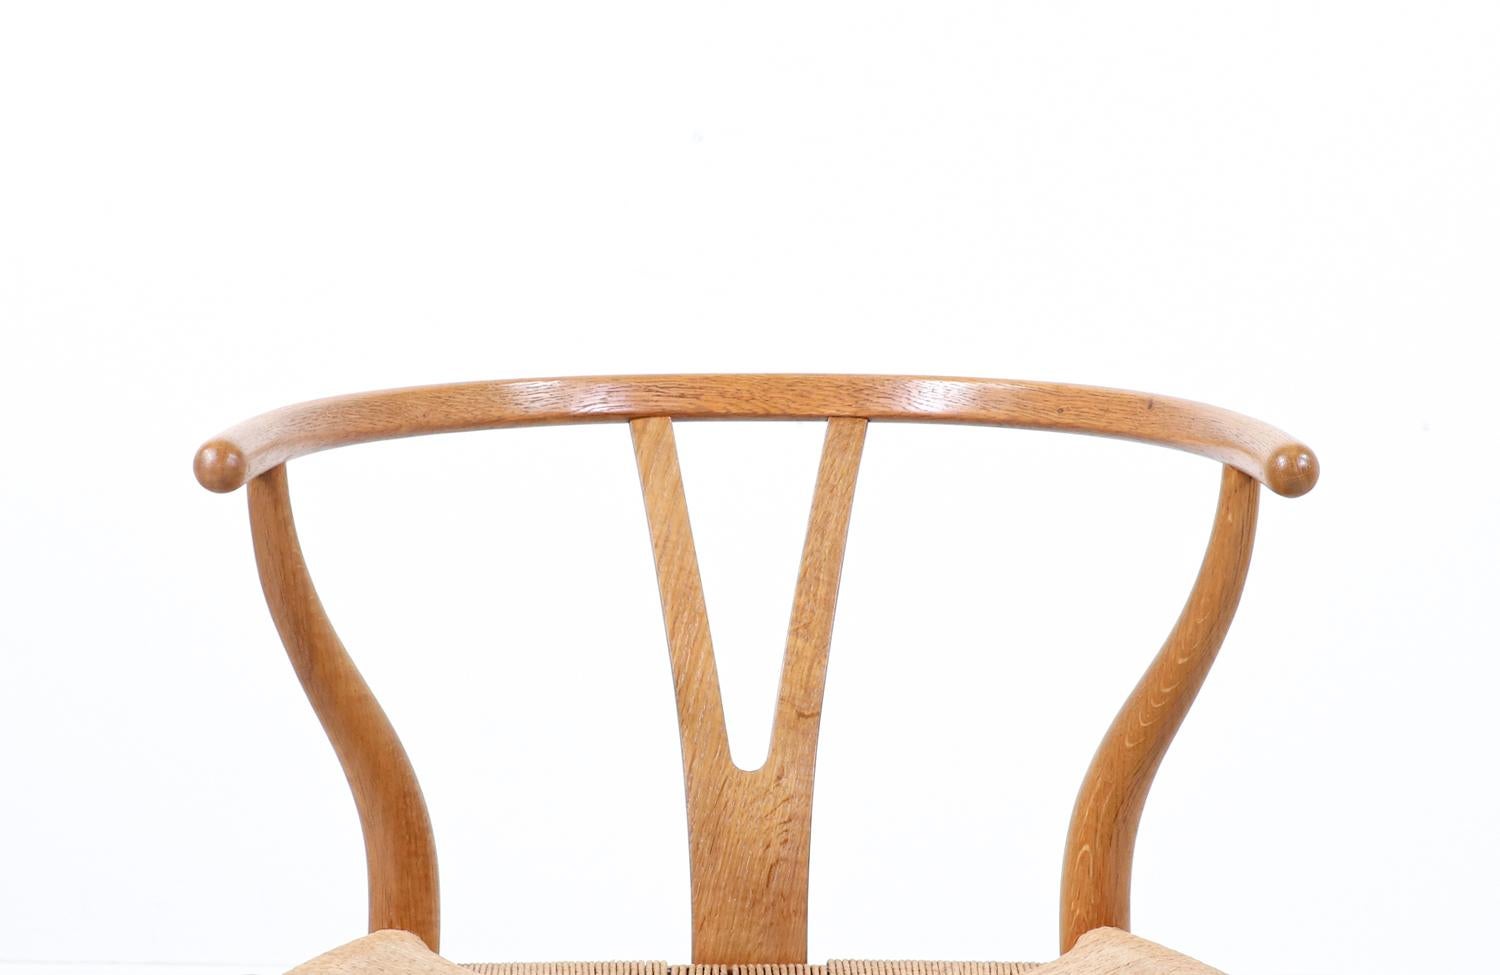 Iconic Hans J. Wegner “Wishbone” Oak Arm Chair for Carl Hansen & Søn For Sale 2